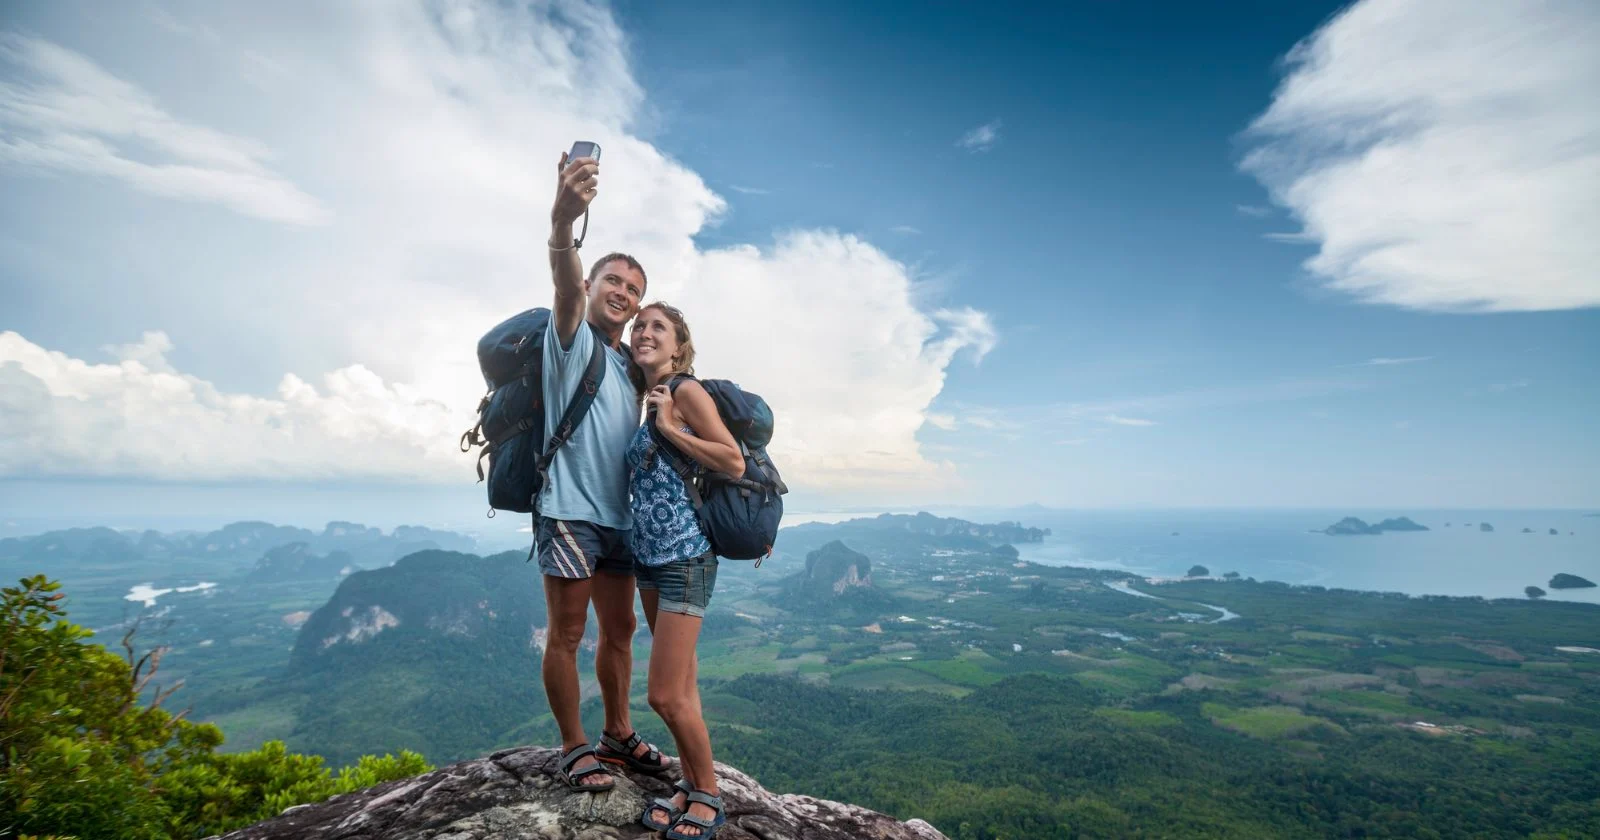 Nguy hiểm tiềm ẩn khi chụp ảnh selfie: Mối đe dọa đến tính mạng và sức khỏe cộng đồng - 1